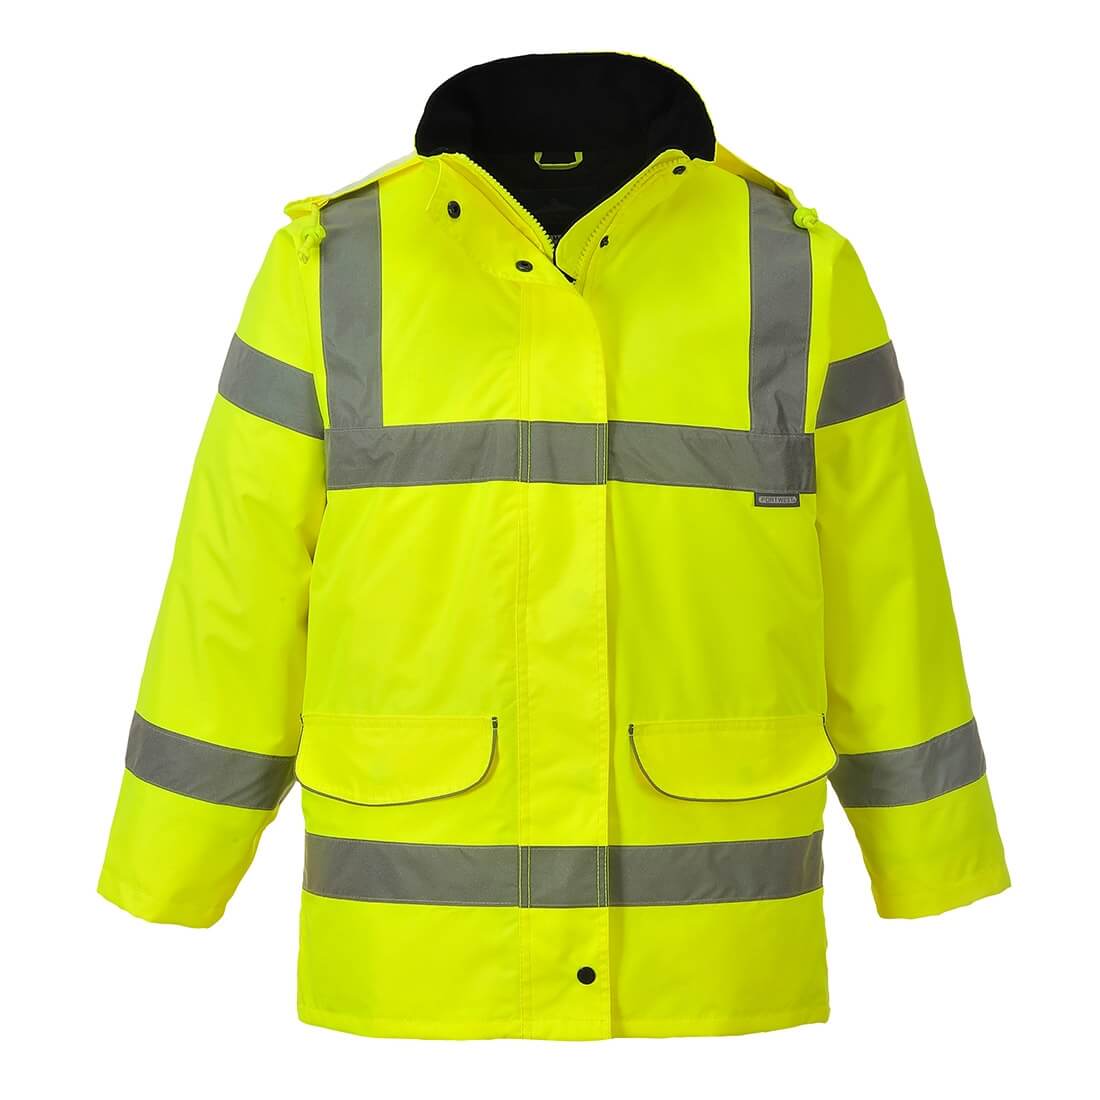 Verkehrs-Warnschutz-Jacke für Frauen - Arbeitskleidung